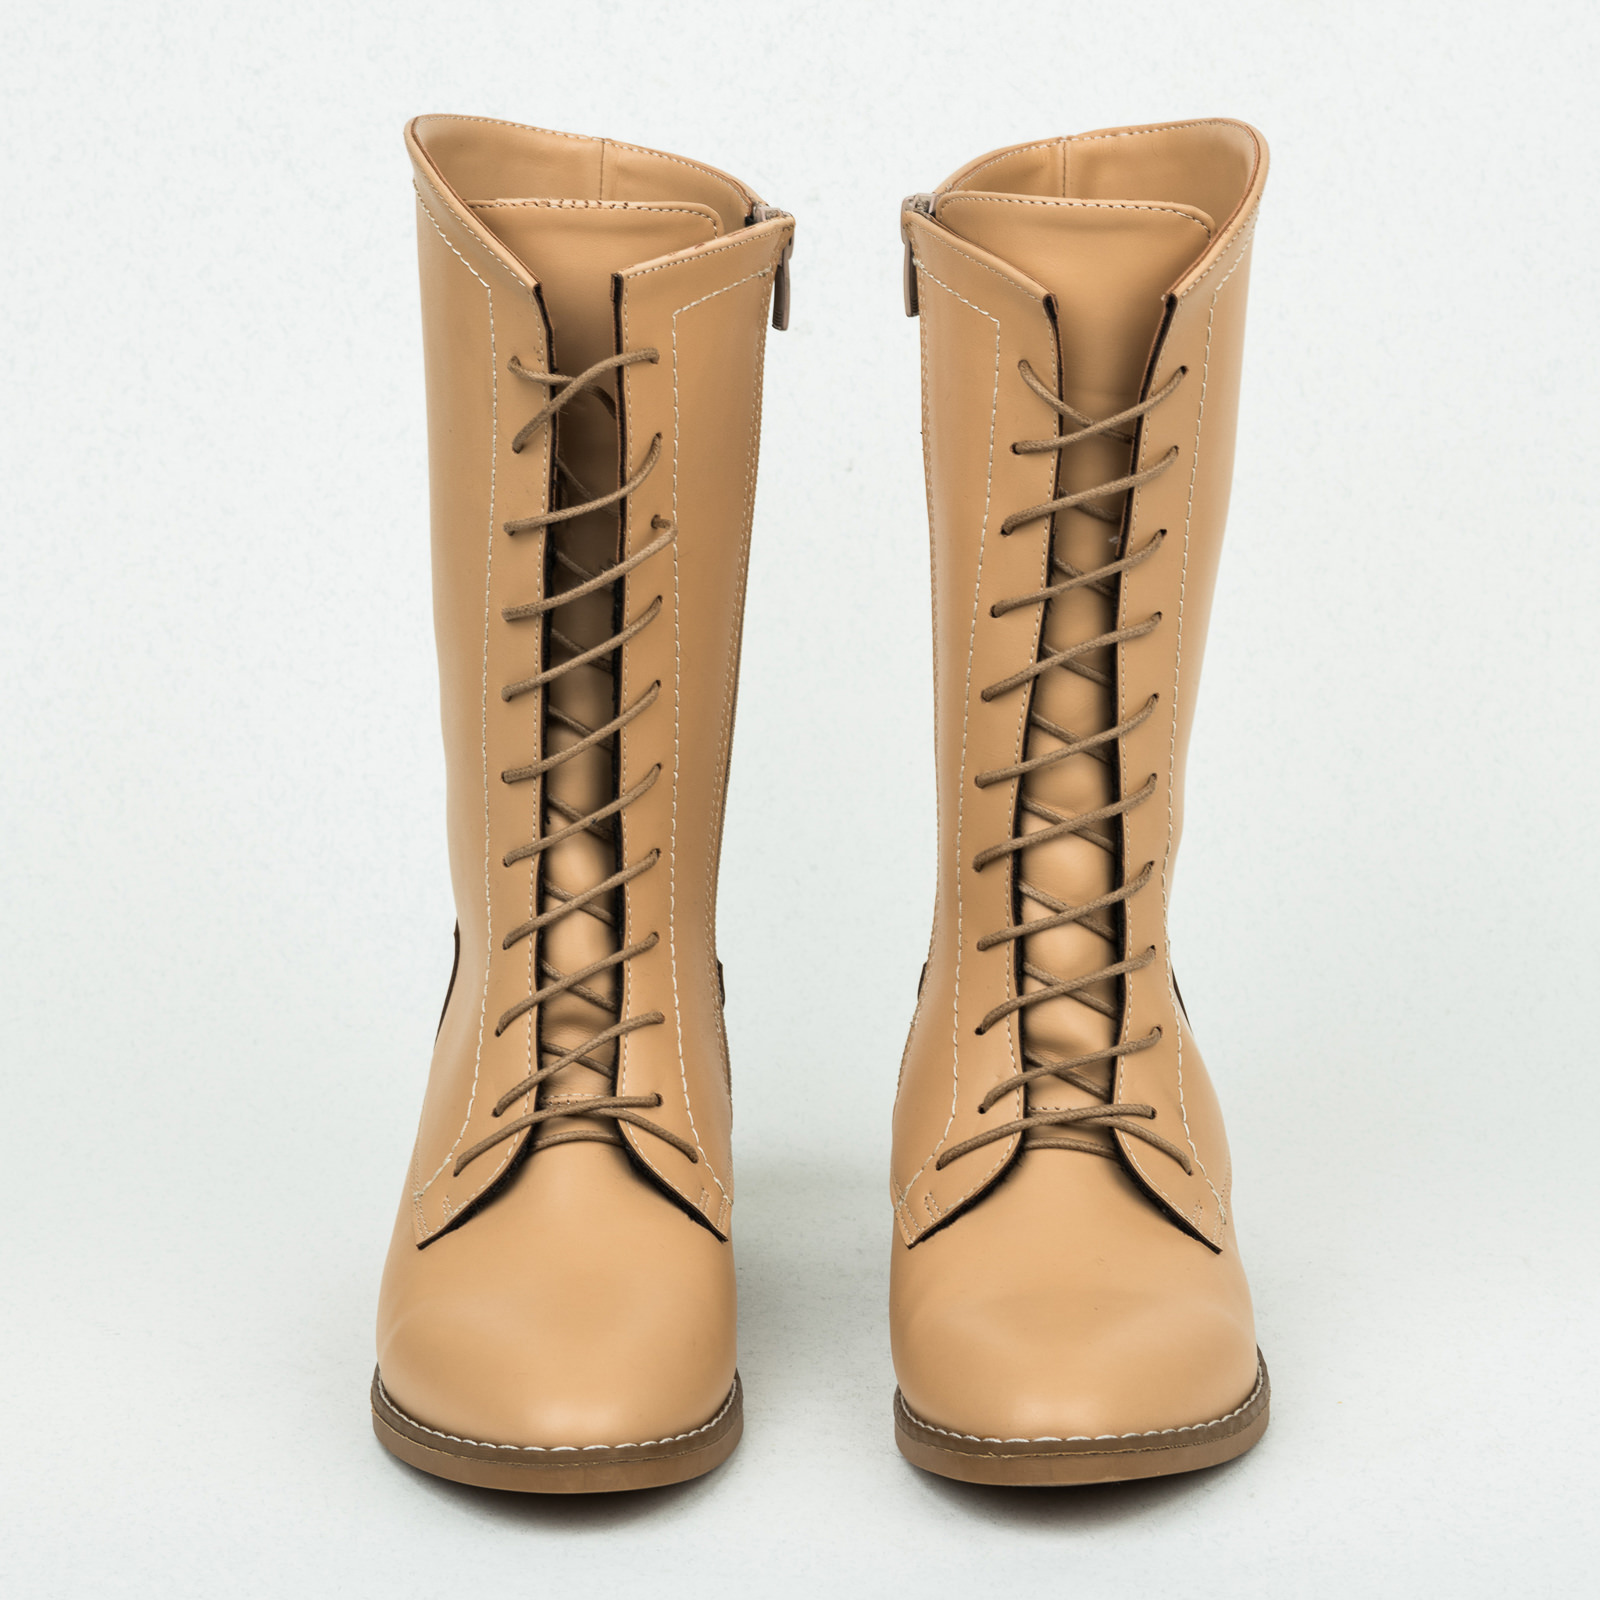 Women ankle boots B144 - BEIGE